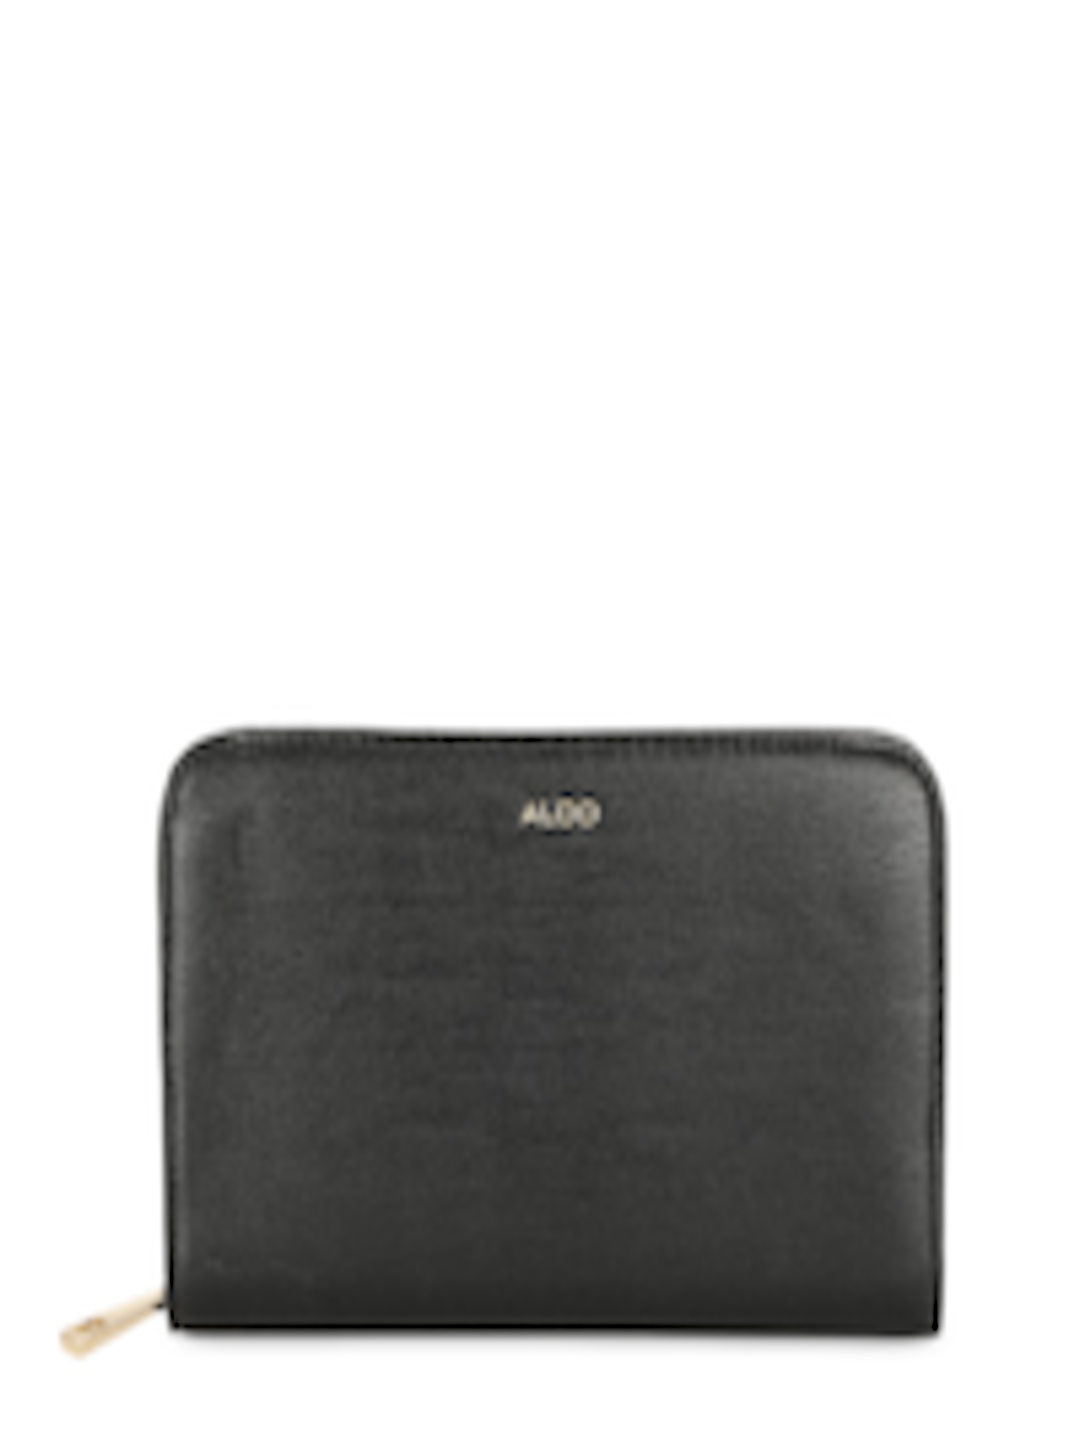 Buy ALDO Women Black Solid Zip Around Wallet - Wallets for Women ...